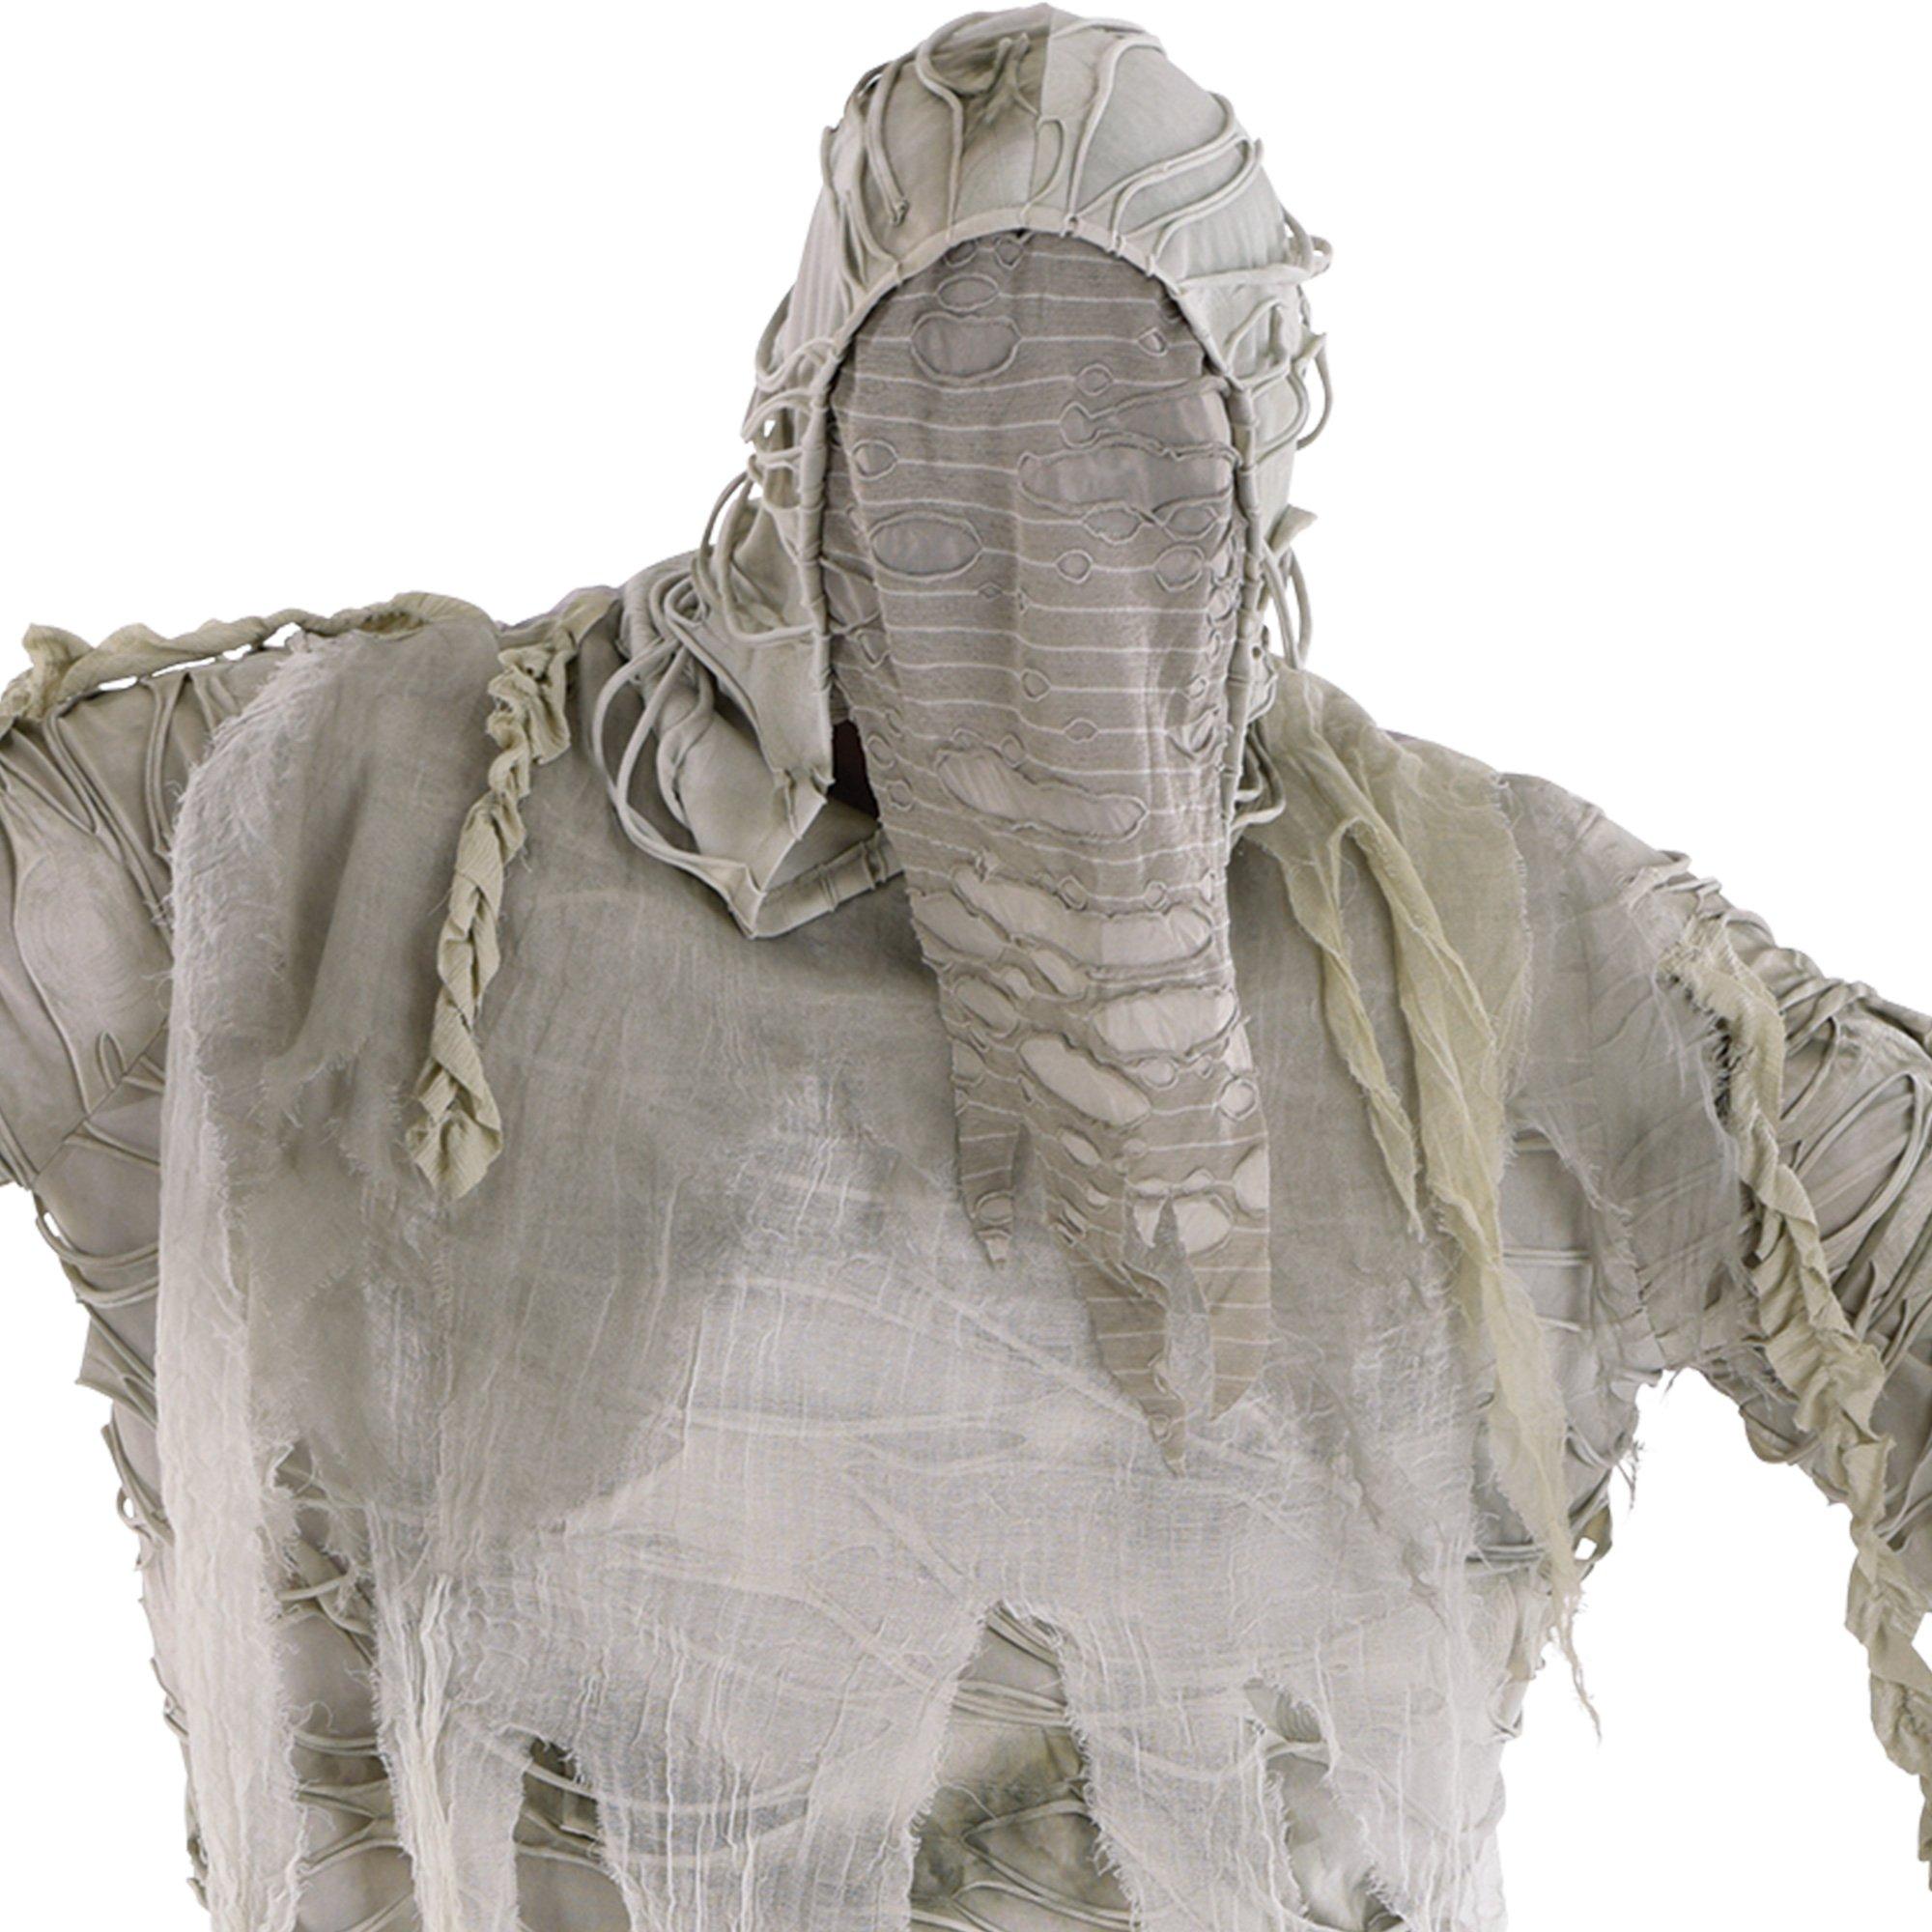 Adult Mummified Plus Size Costume